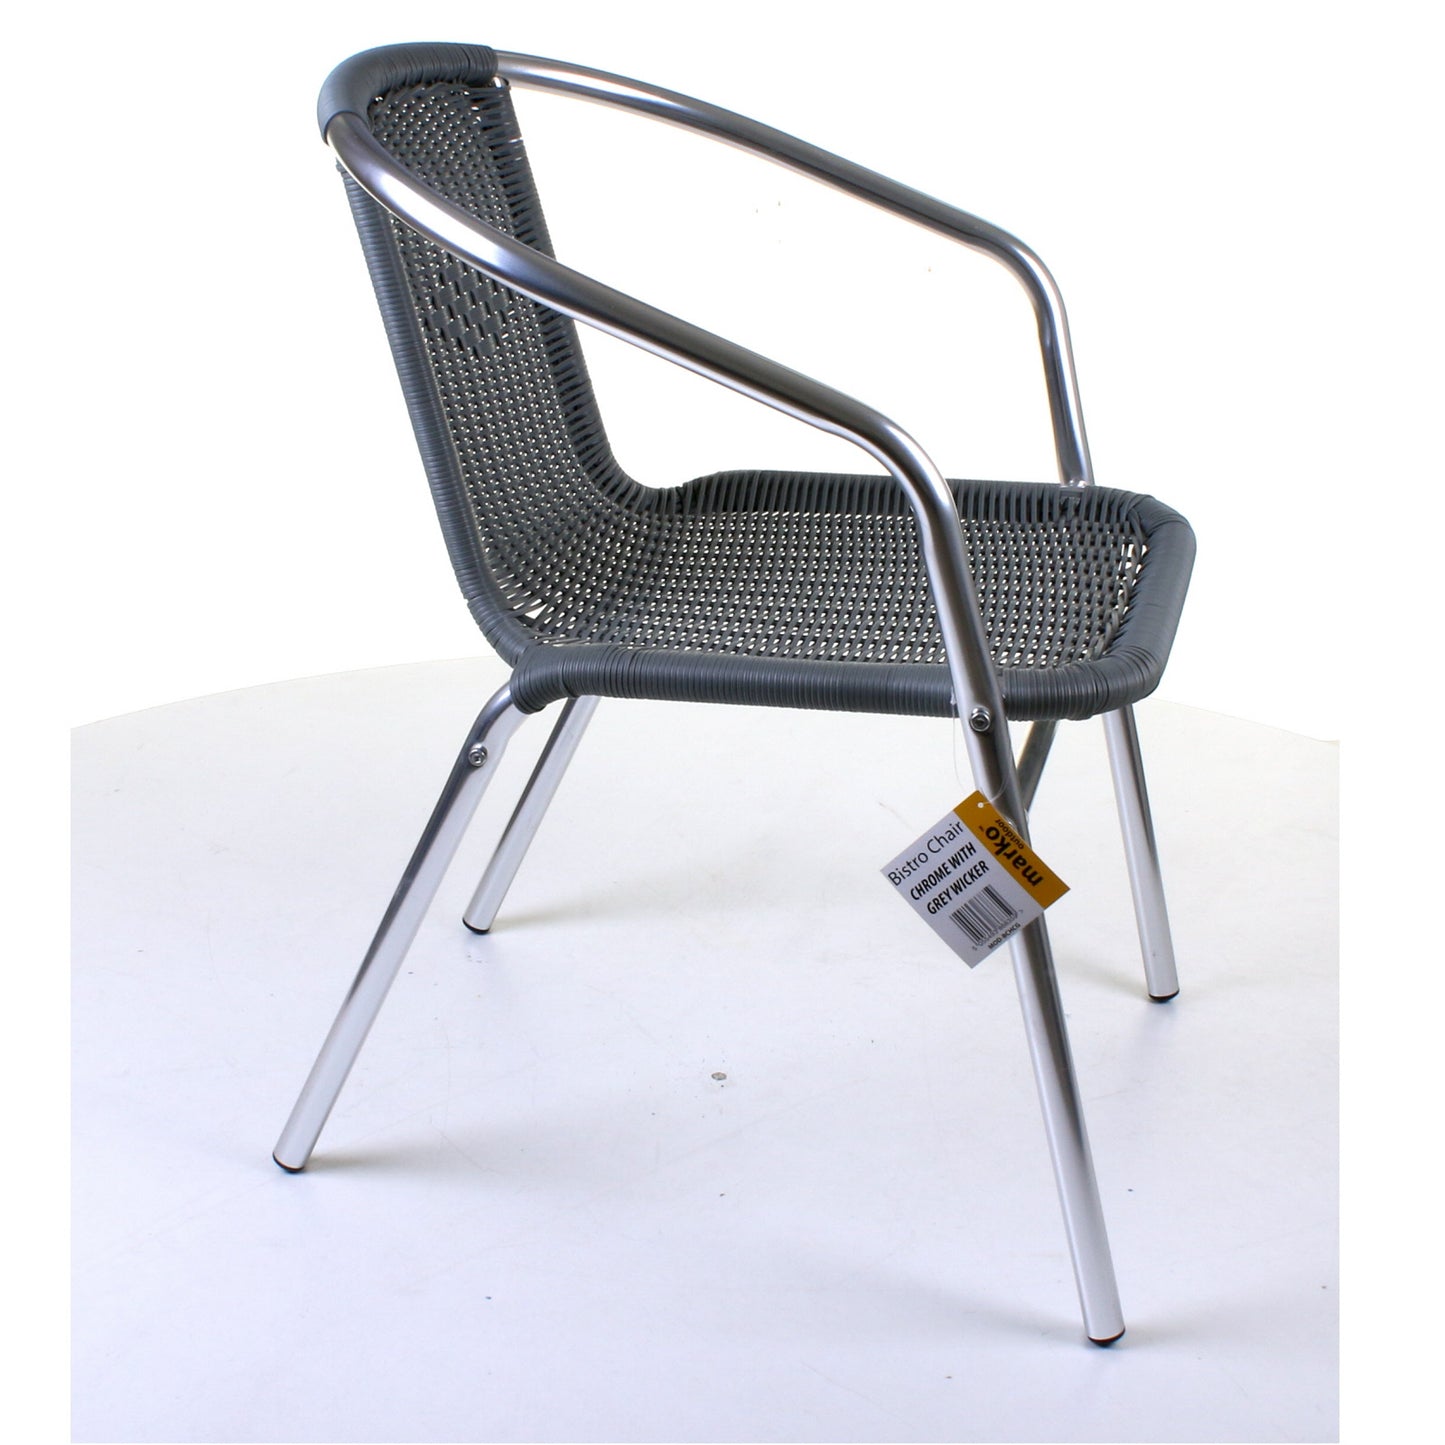 Grey Wicker Chrome Bistro Chair